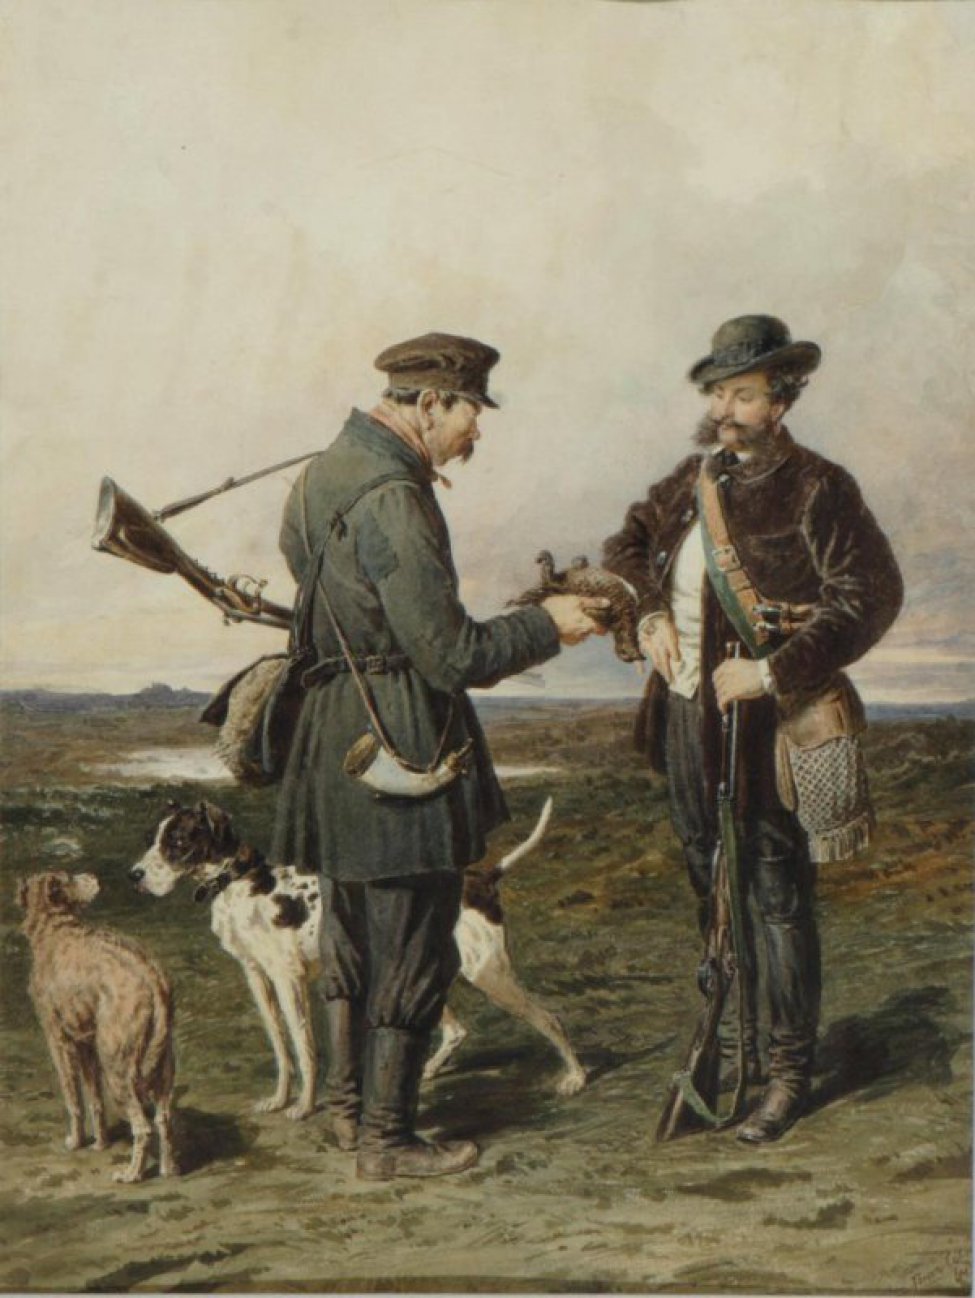 В поле изображены два охотника, стоящие друг перед другом. Справа - барин, слева - крестьянин. Крестьянин протягивает барину куропатку; слева - две собаки.